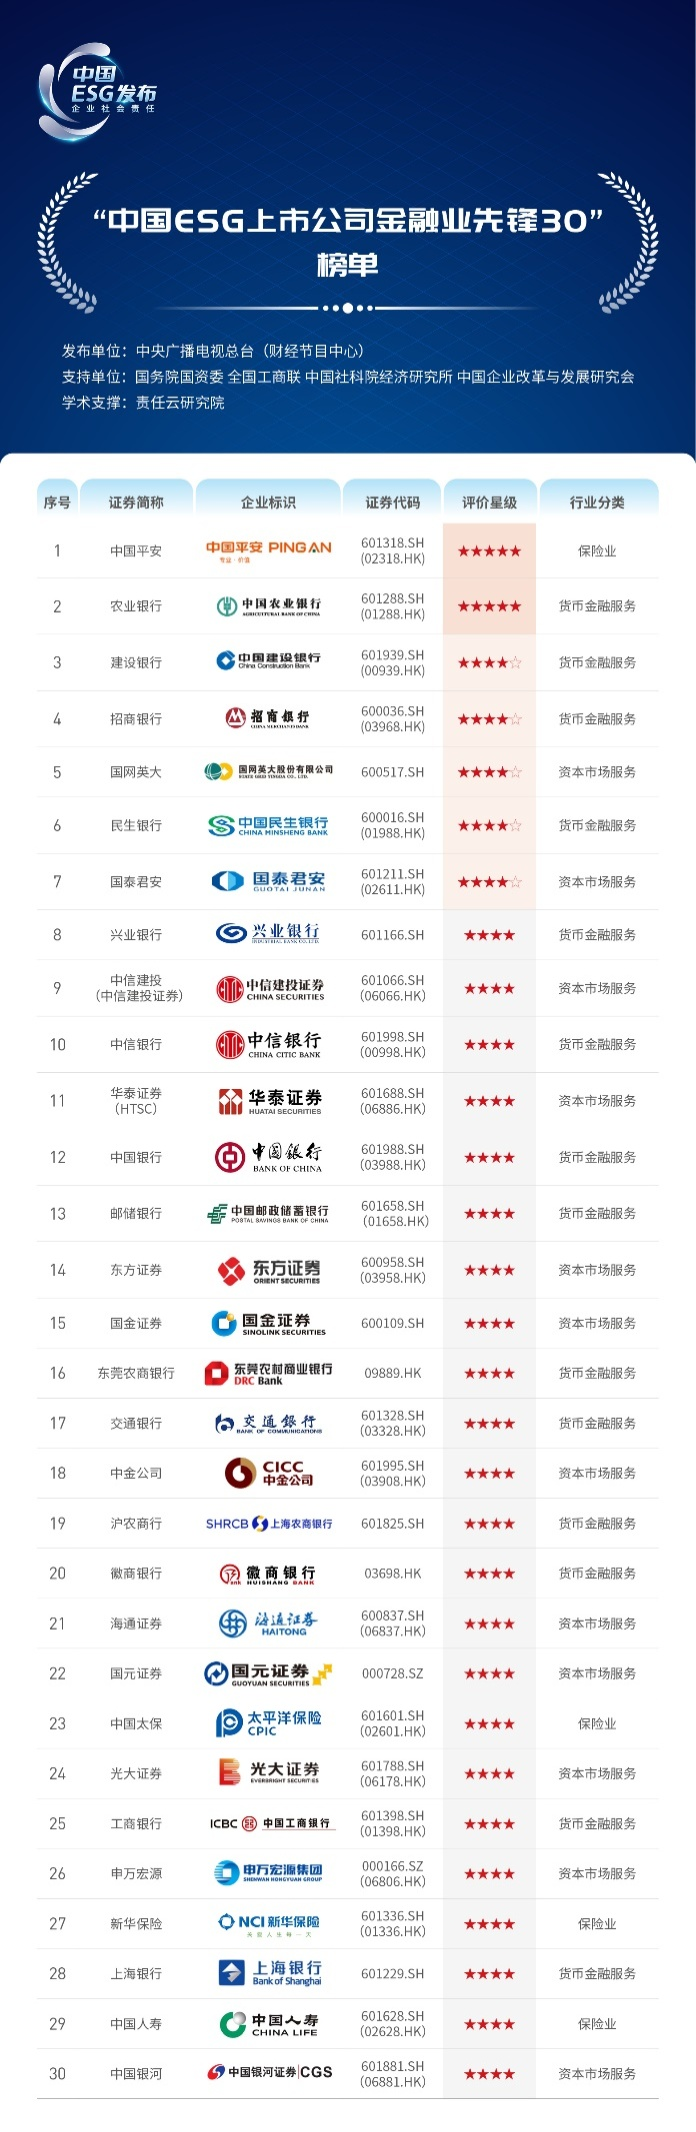 国泰君安入选“中国ESG上市公司金融业先锋30”榜单